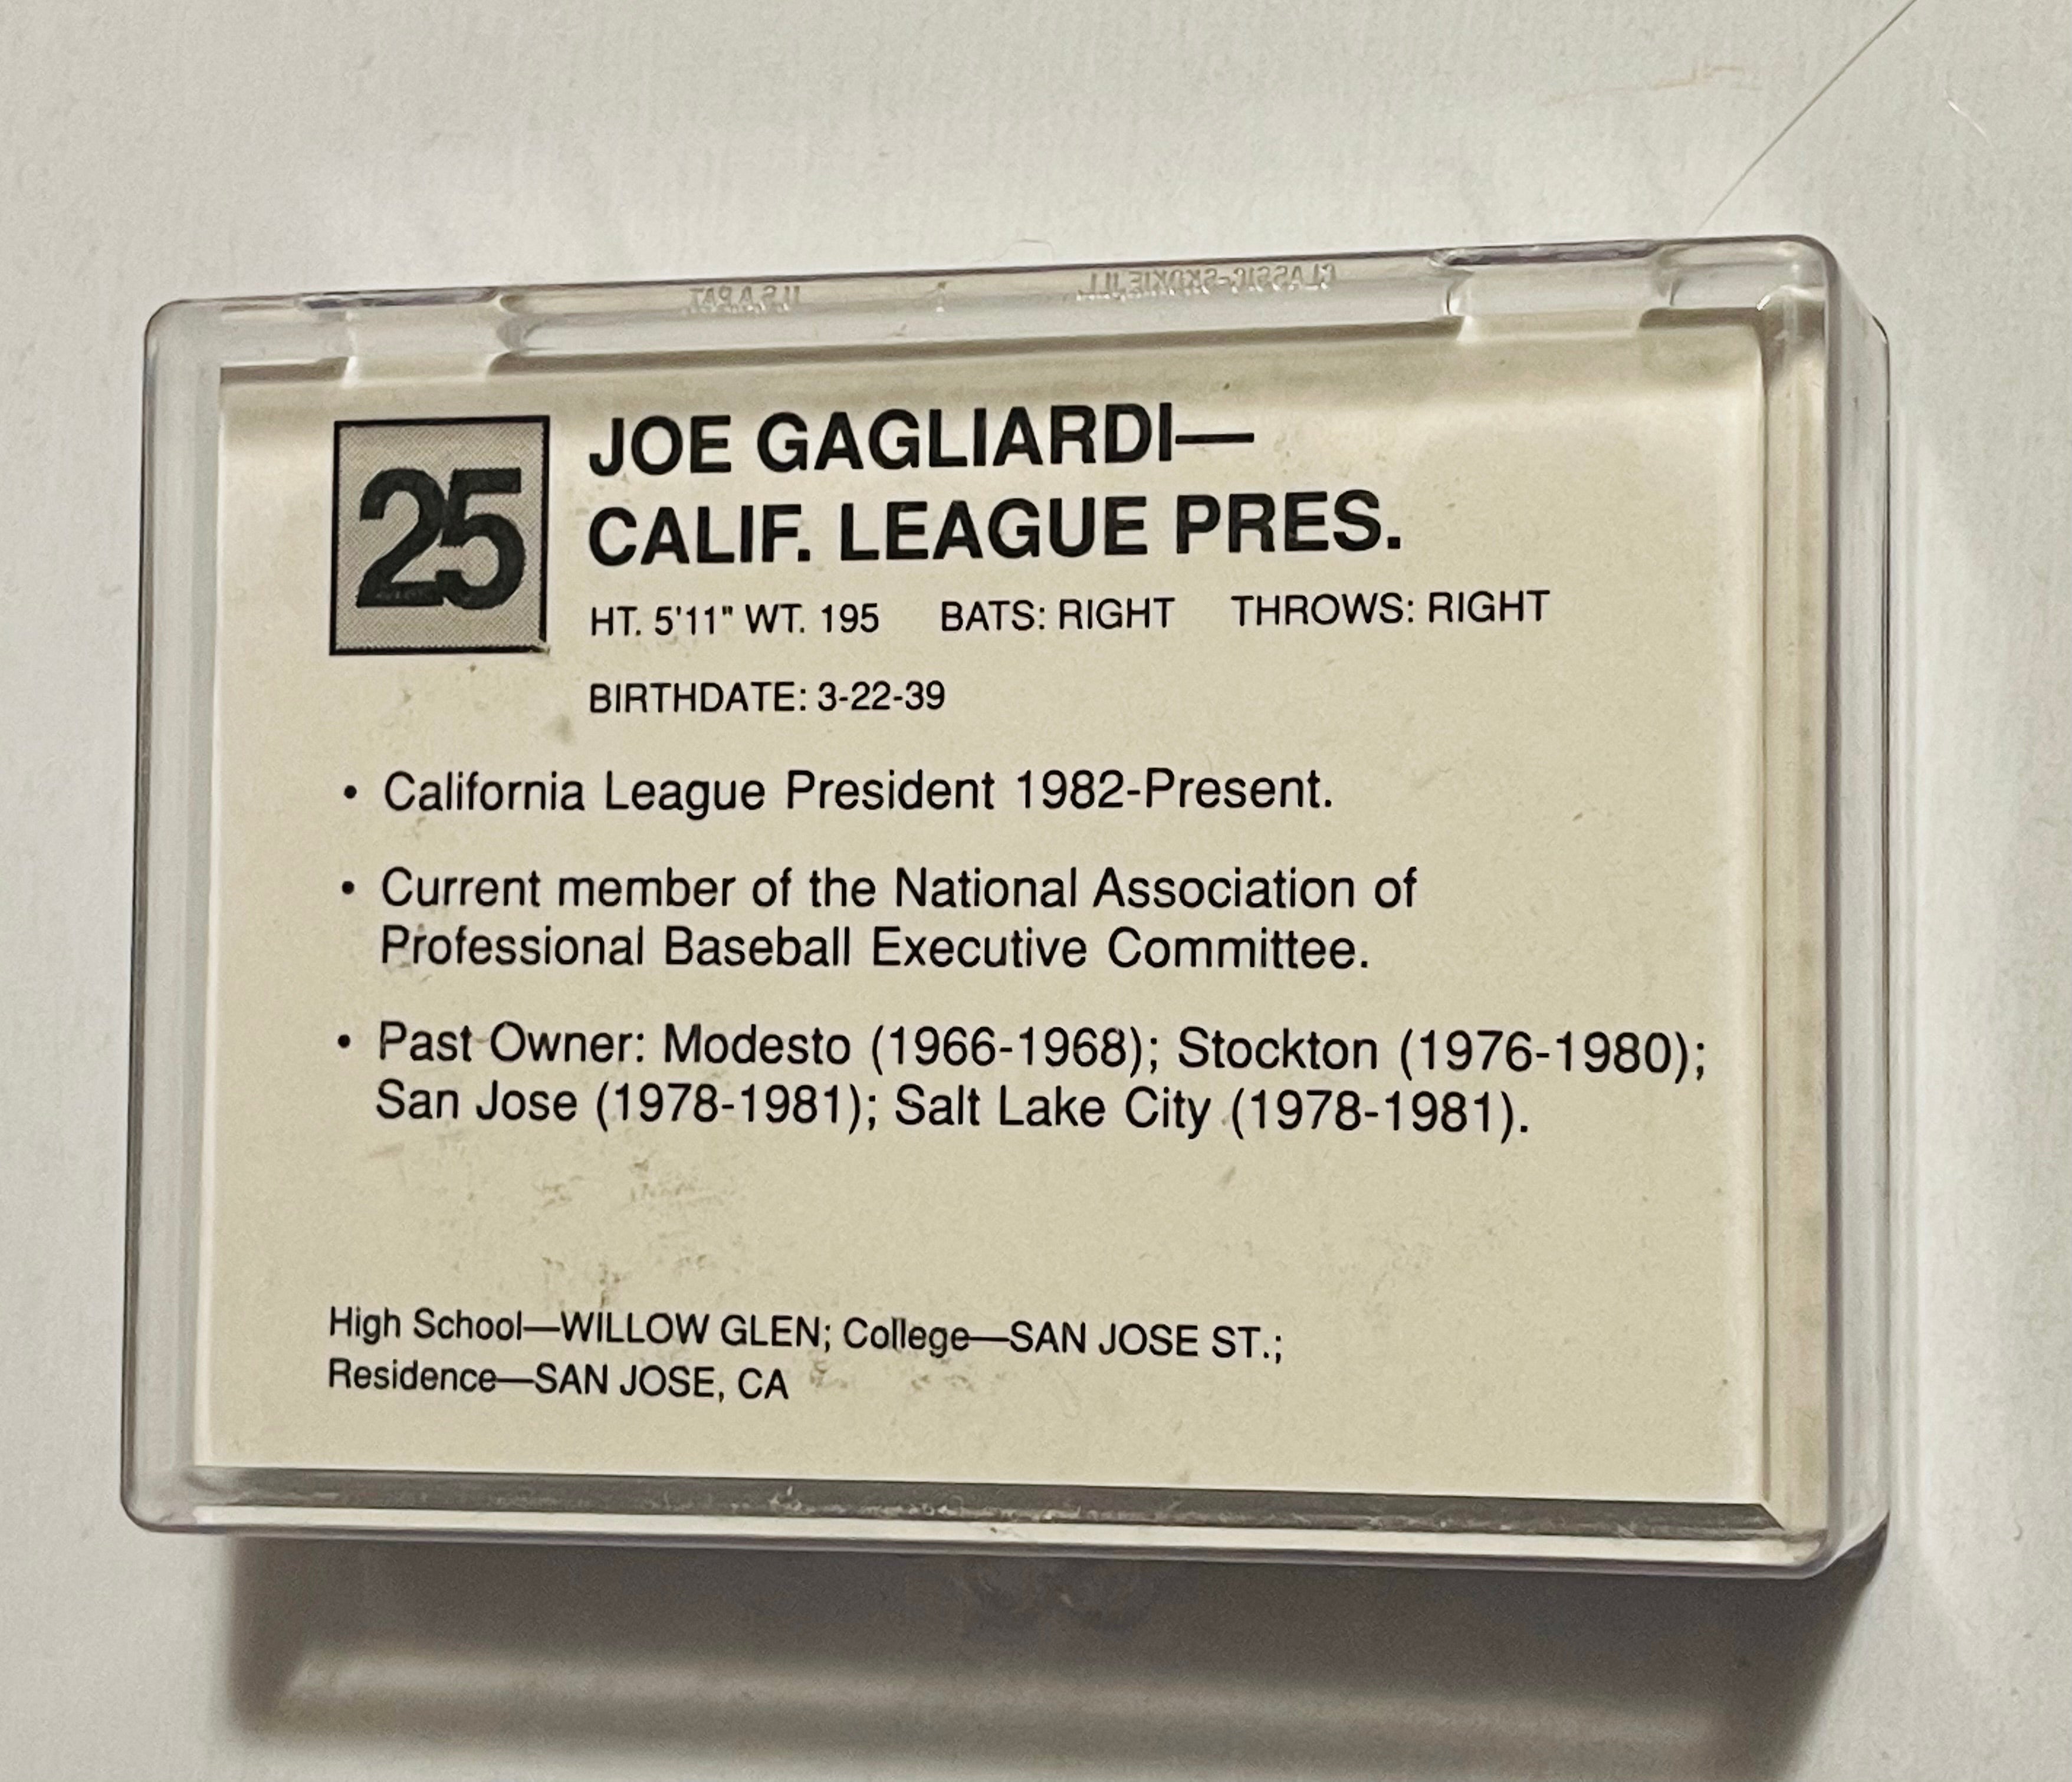 Ken Griffey Jr. California league All star baseball cards set 1988